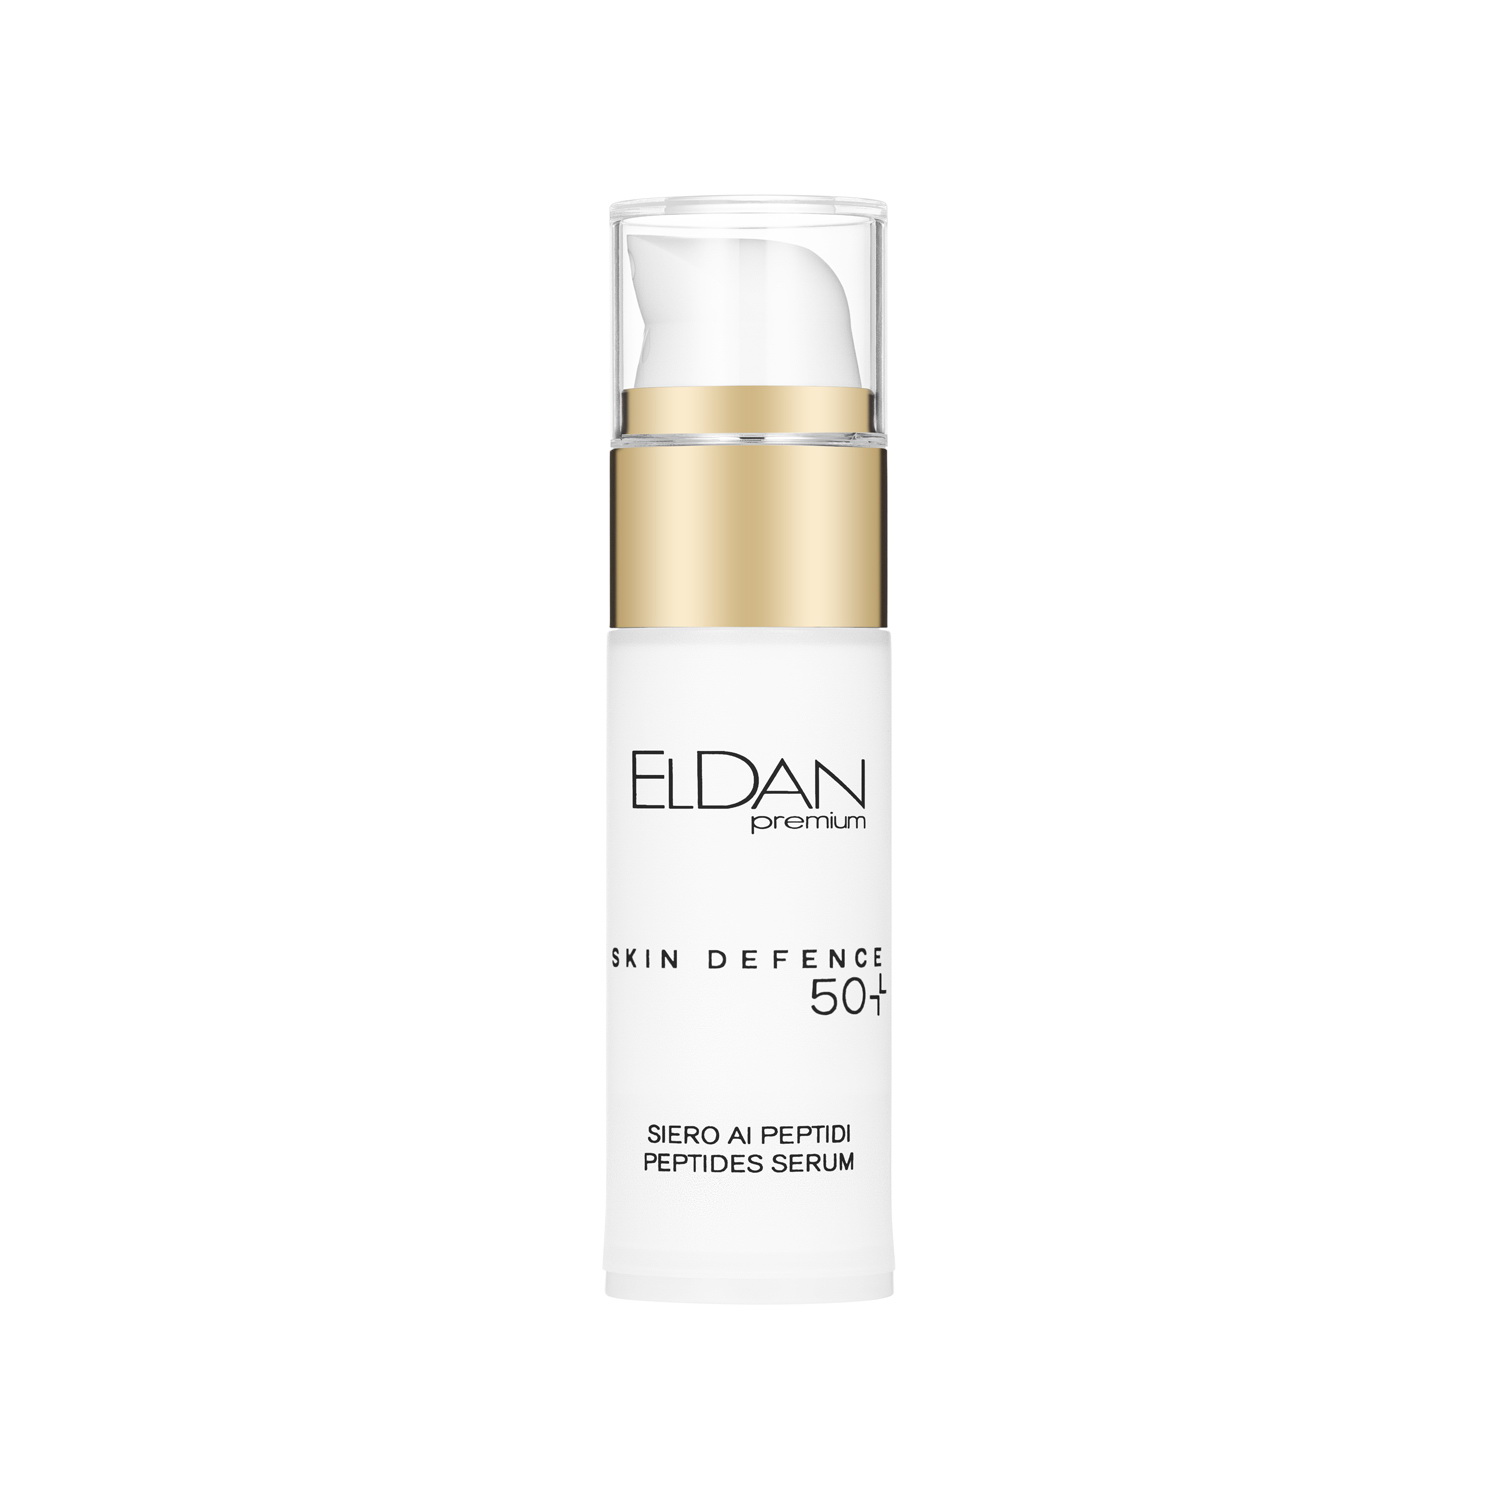 Сыворотка для лица ELDAN Premium Pepto Skin Defence 50+ пептидная, антивозрастная, 30 мл